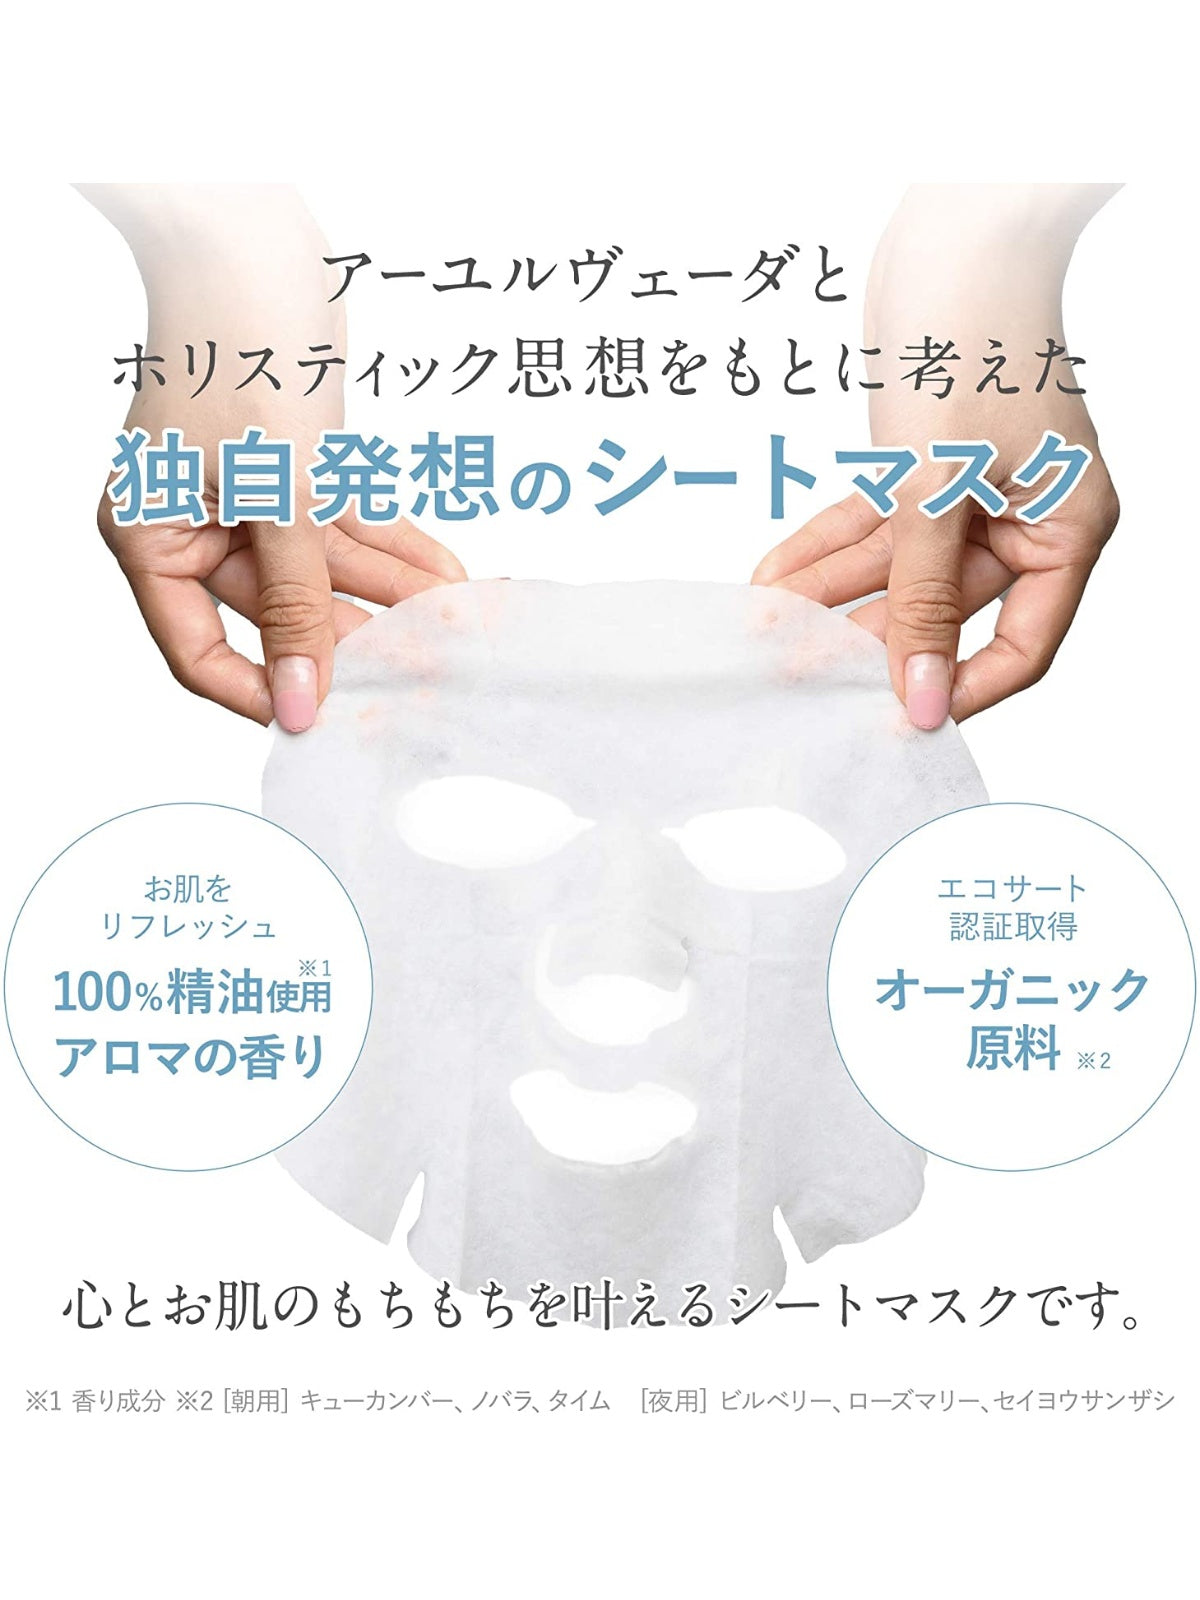 フェイスマスク [夜用] ムーンライトアロマの香り mochi mochi シートマスク 30枚